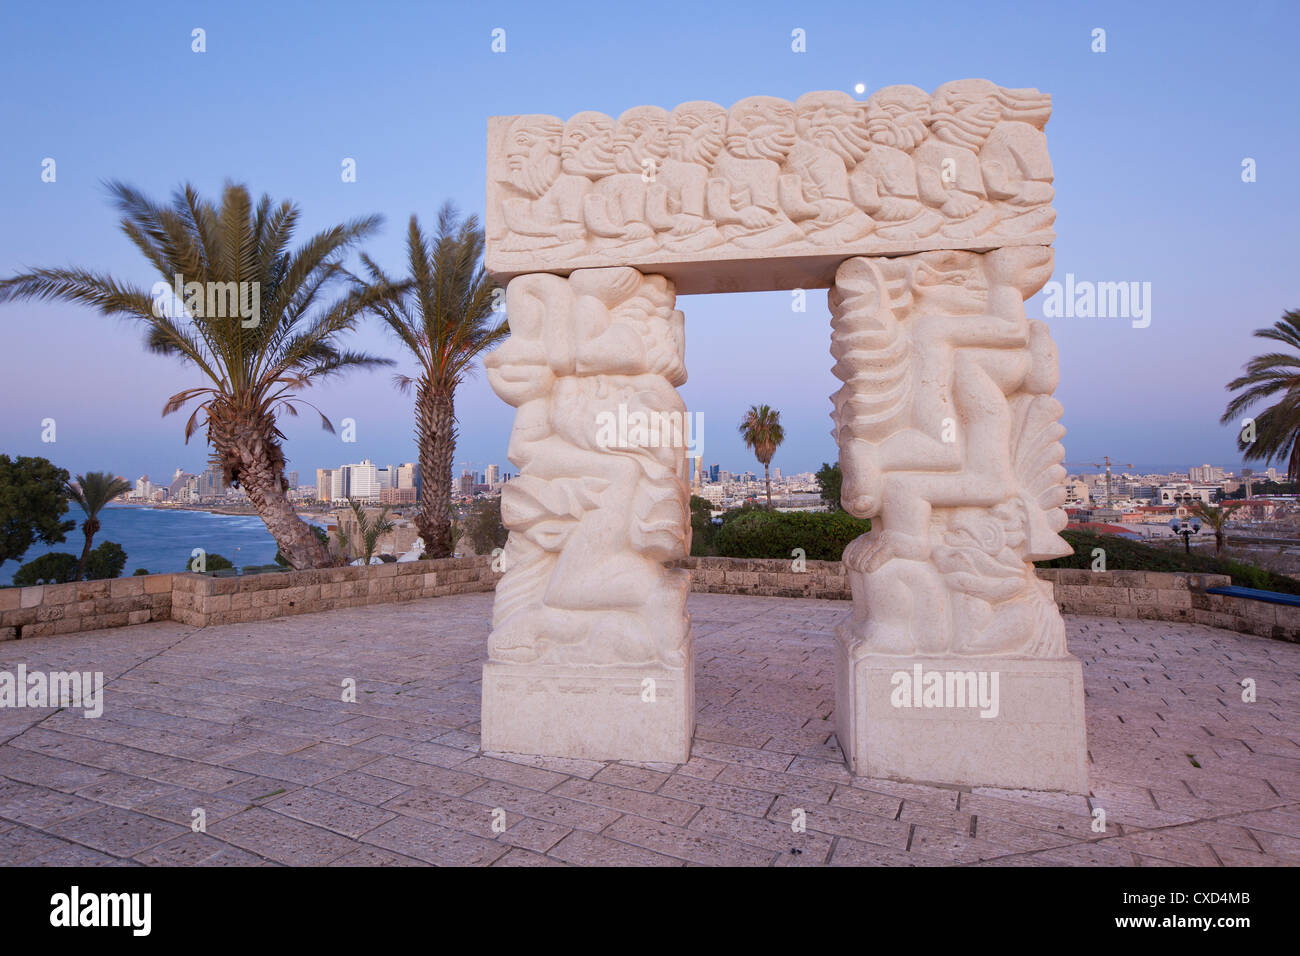 Sculpture représentant la chute de Jéricho, le sacrifice d'Isaac et de Jacob, le rêve de jardins HaPisgah, Tel Aviv, Israël, Moyen Orient Banque D'Images